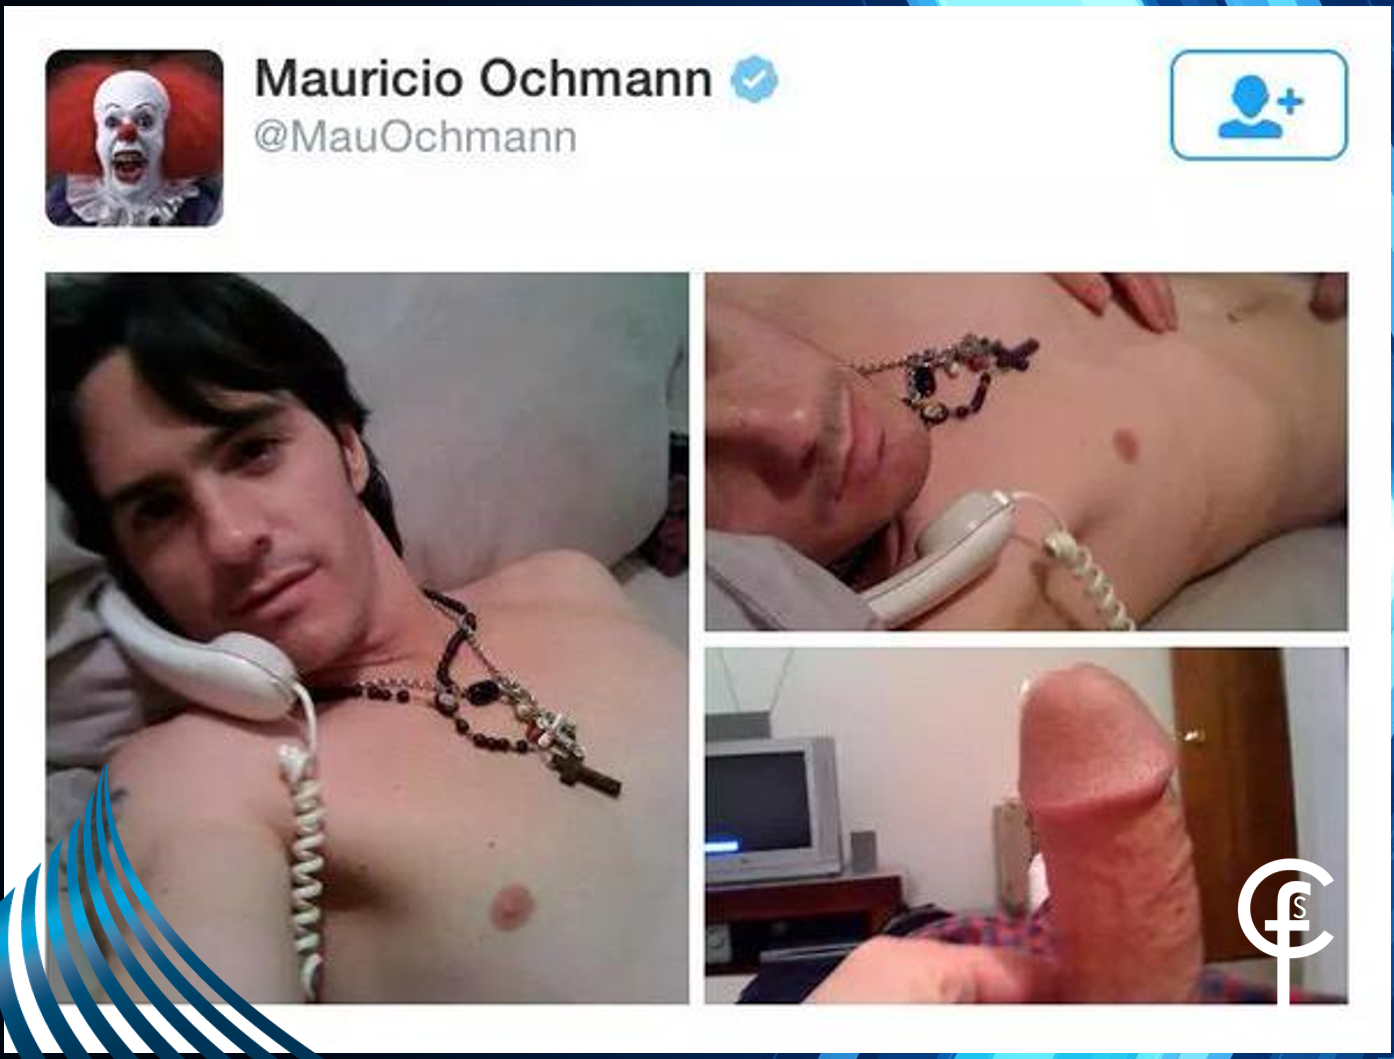 Se filtran fotos desnudo del galán mexicano mauricio ochmann +18.